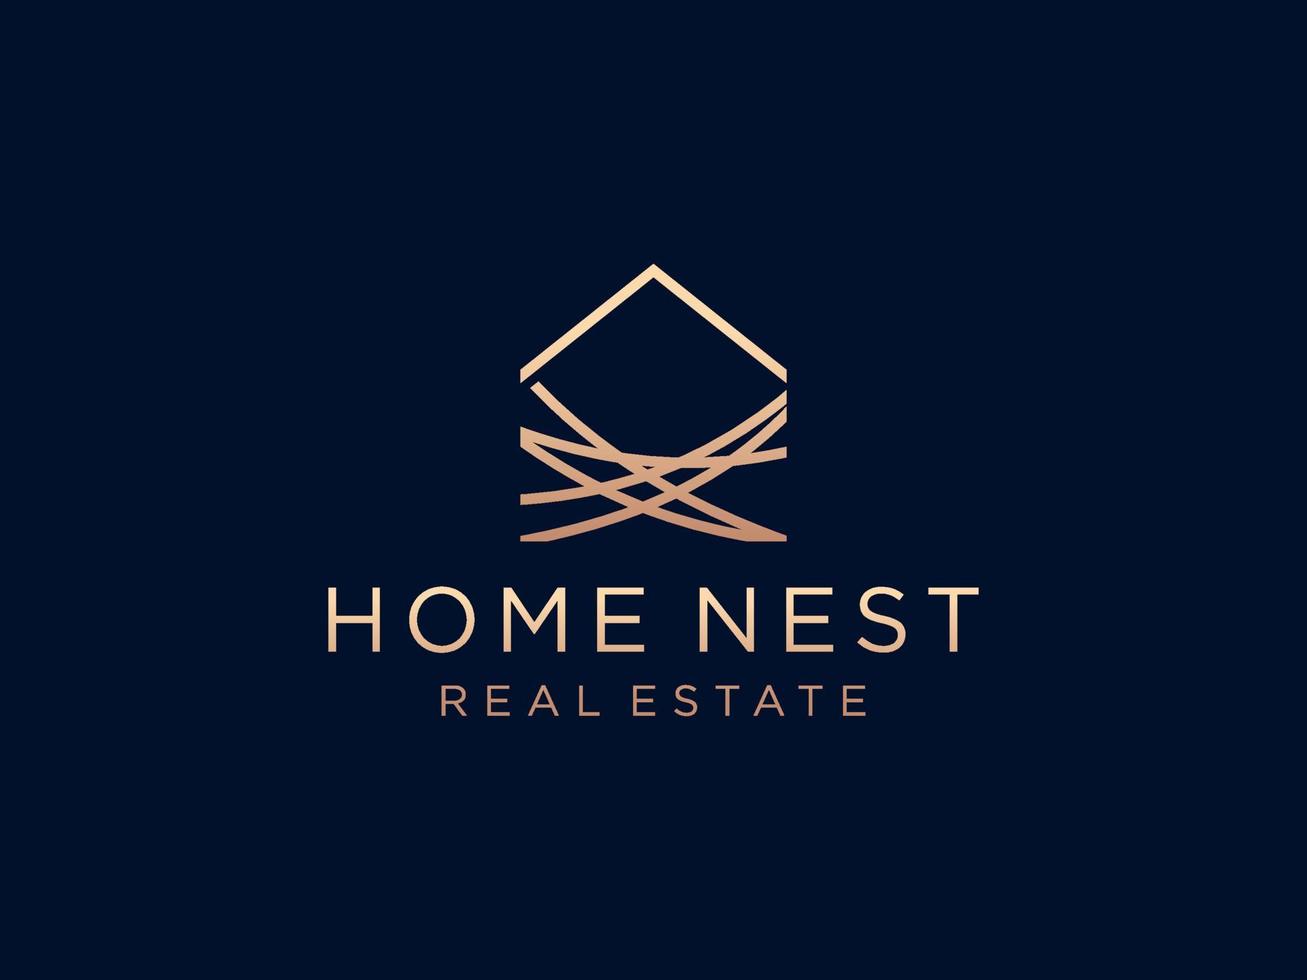 Home nest logo template, home branch handmade logo illustration vector